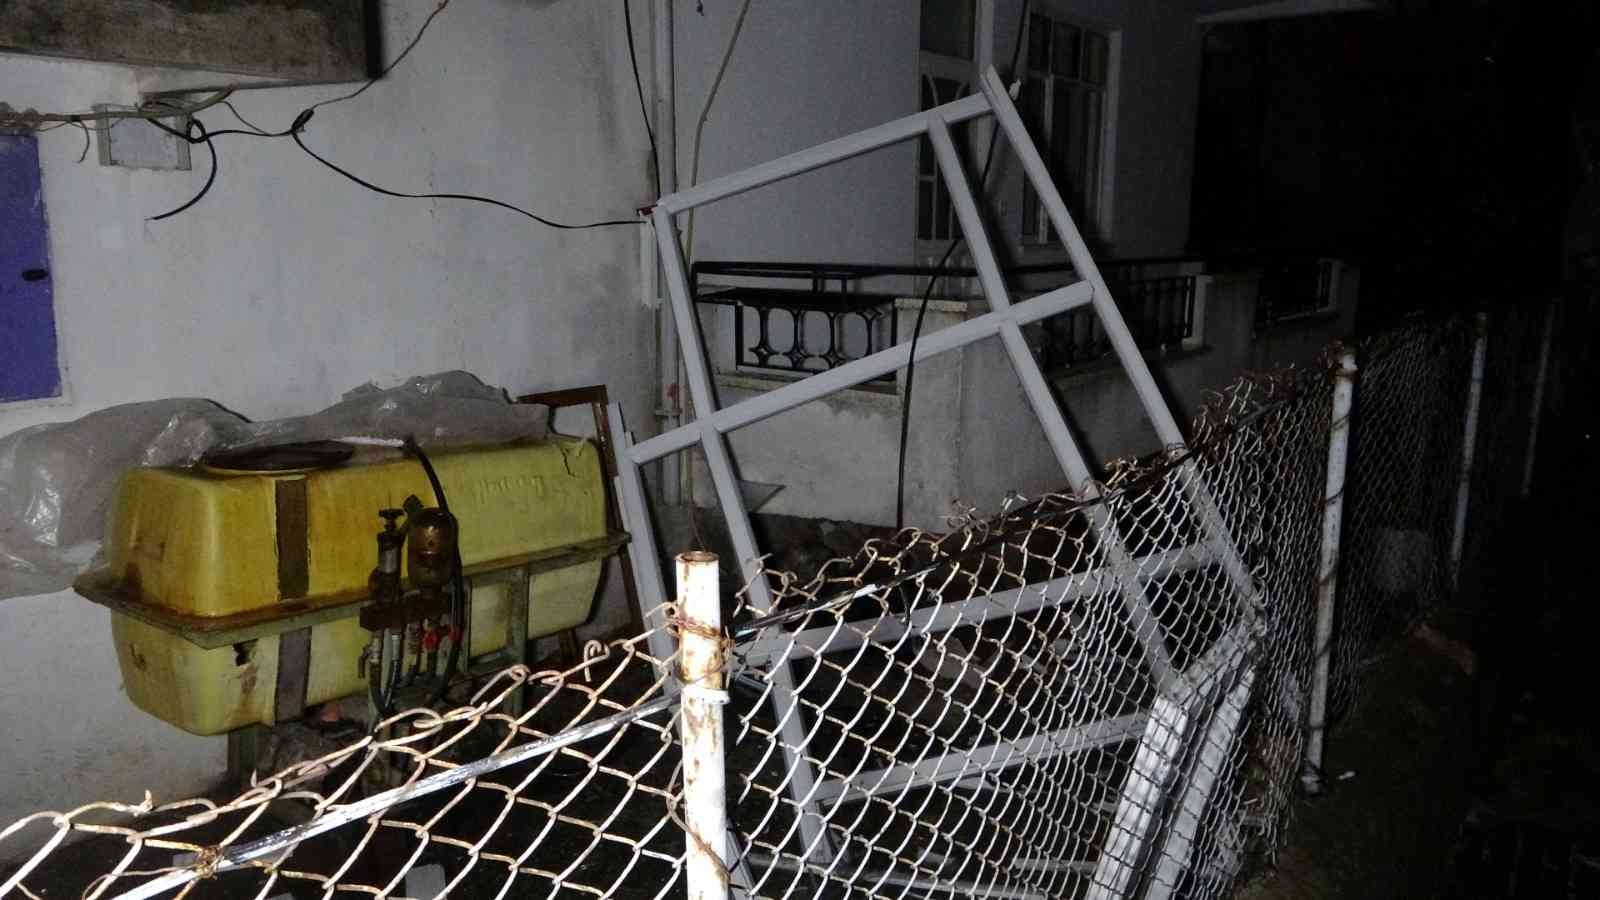 Şiddetli yağış ve fırtına evin balkonundaki PVC sistemini uçurdu #antalya